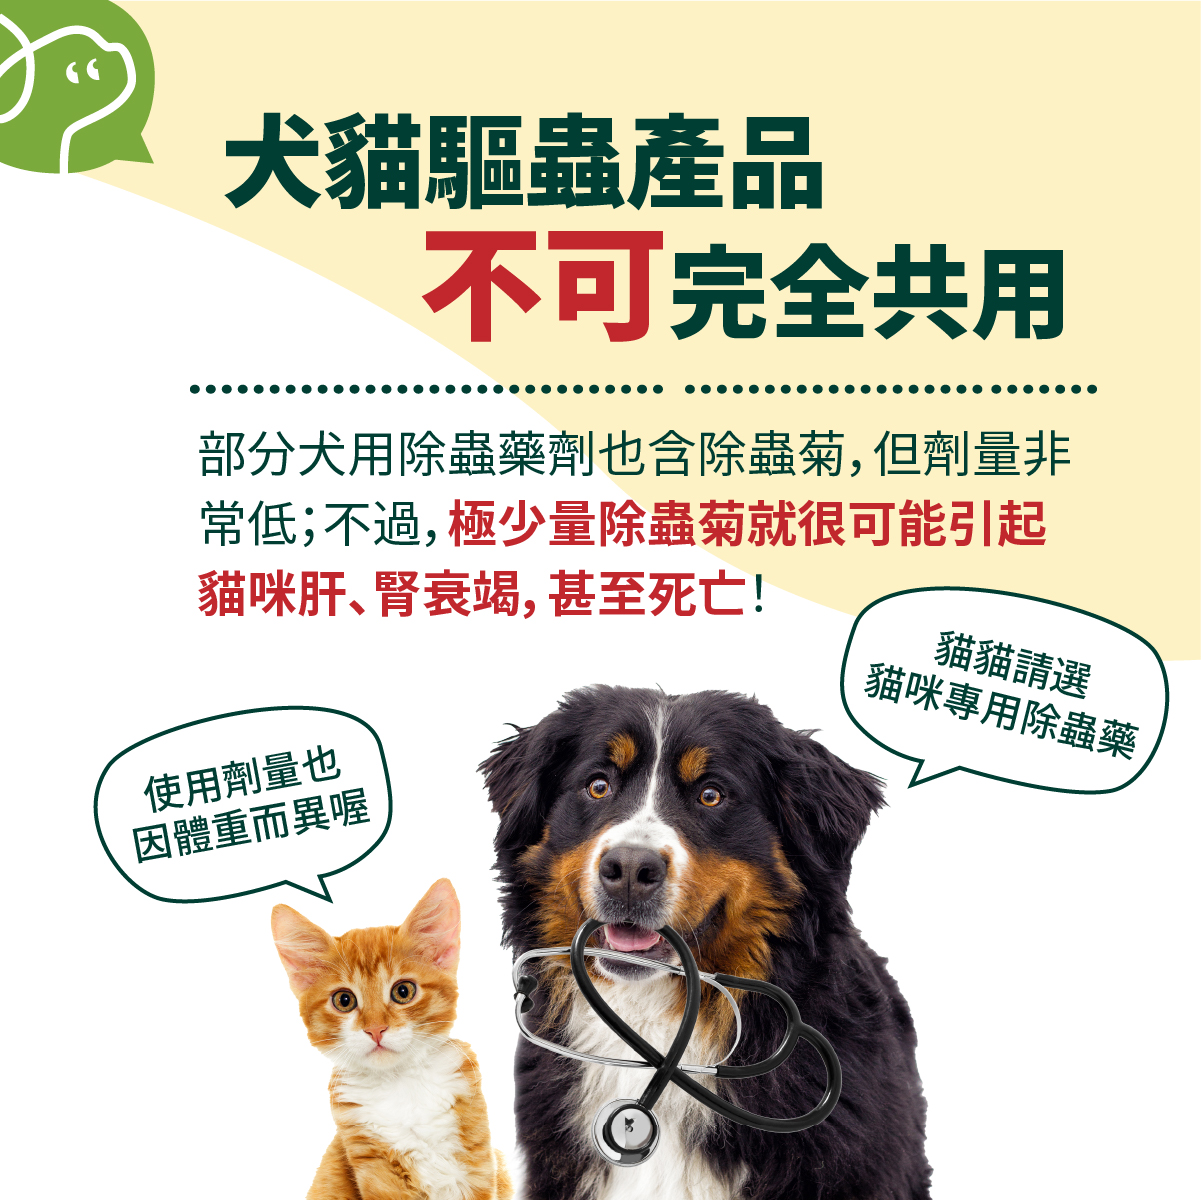 部分犬用除蟲藥劑也含除蟲菊，但劑量非常低；不過，極少量除蟲菊就很可能引起貓咪肝、腎衰竭，甚至死亡！